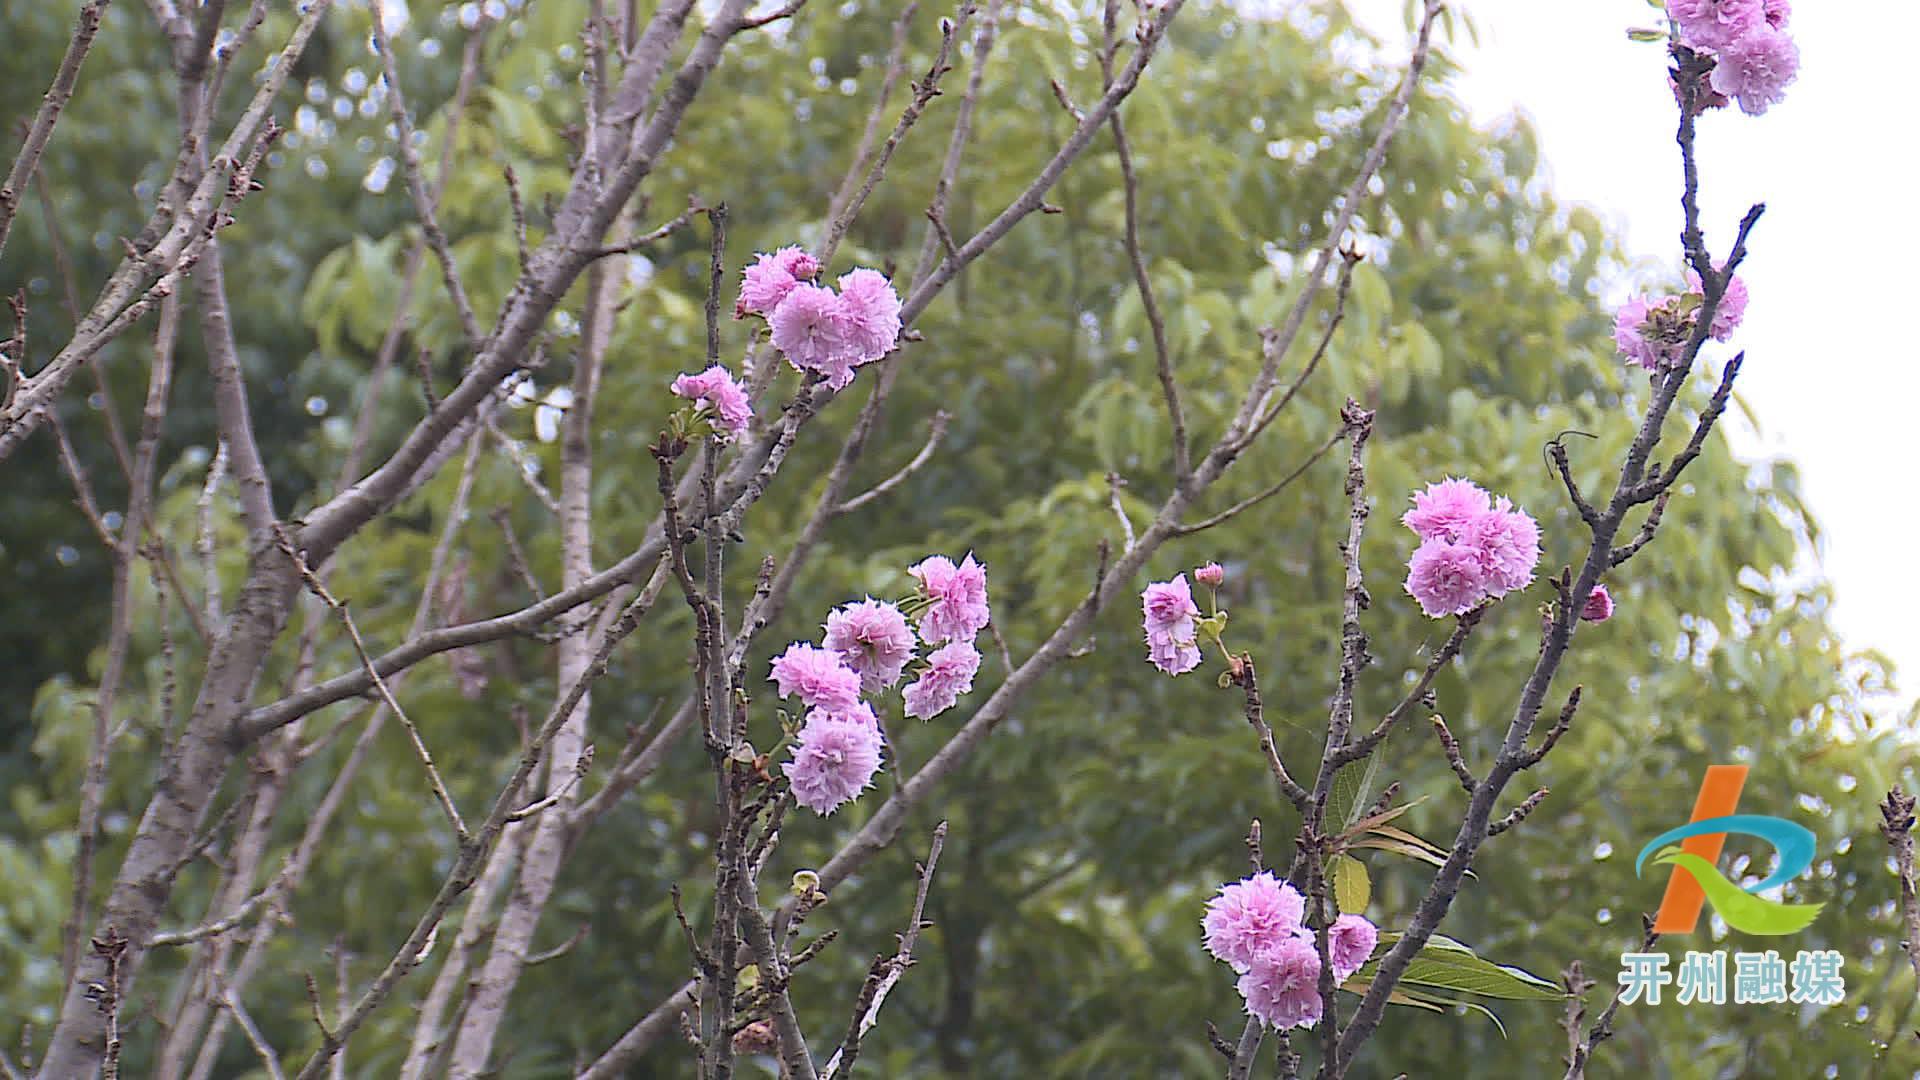 滨湖公园的多种花卉错季开放 形成了现在是春天的假象！‘NG官网APP下载’(图2)